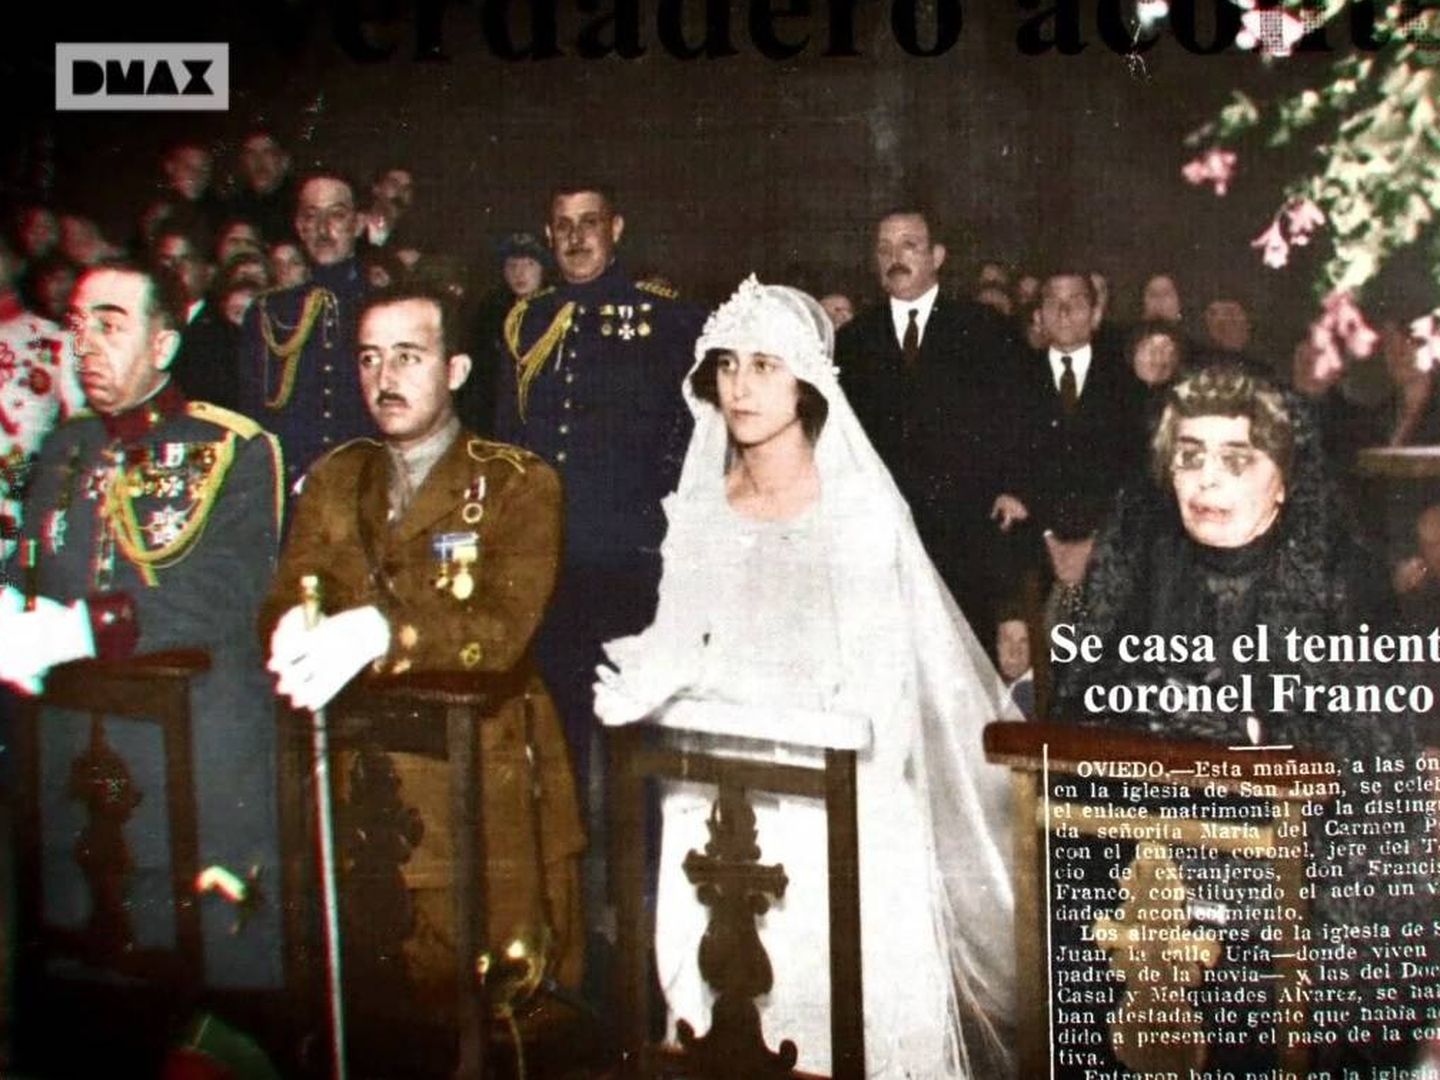 La boda de Francisco Franco y Carmen Polo, donde fue padrino el rey Alfonso XIII detrás.